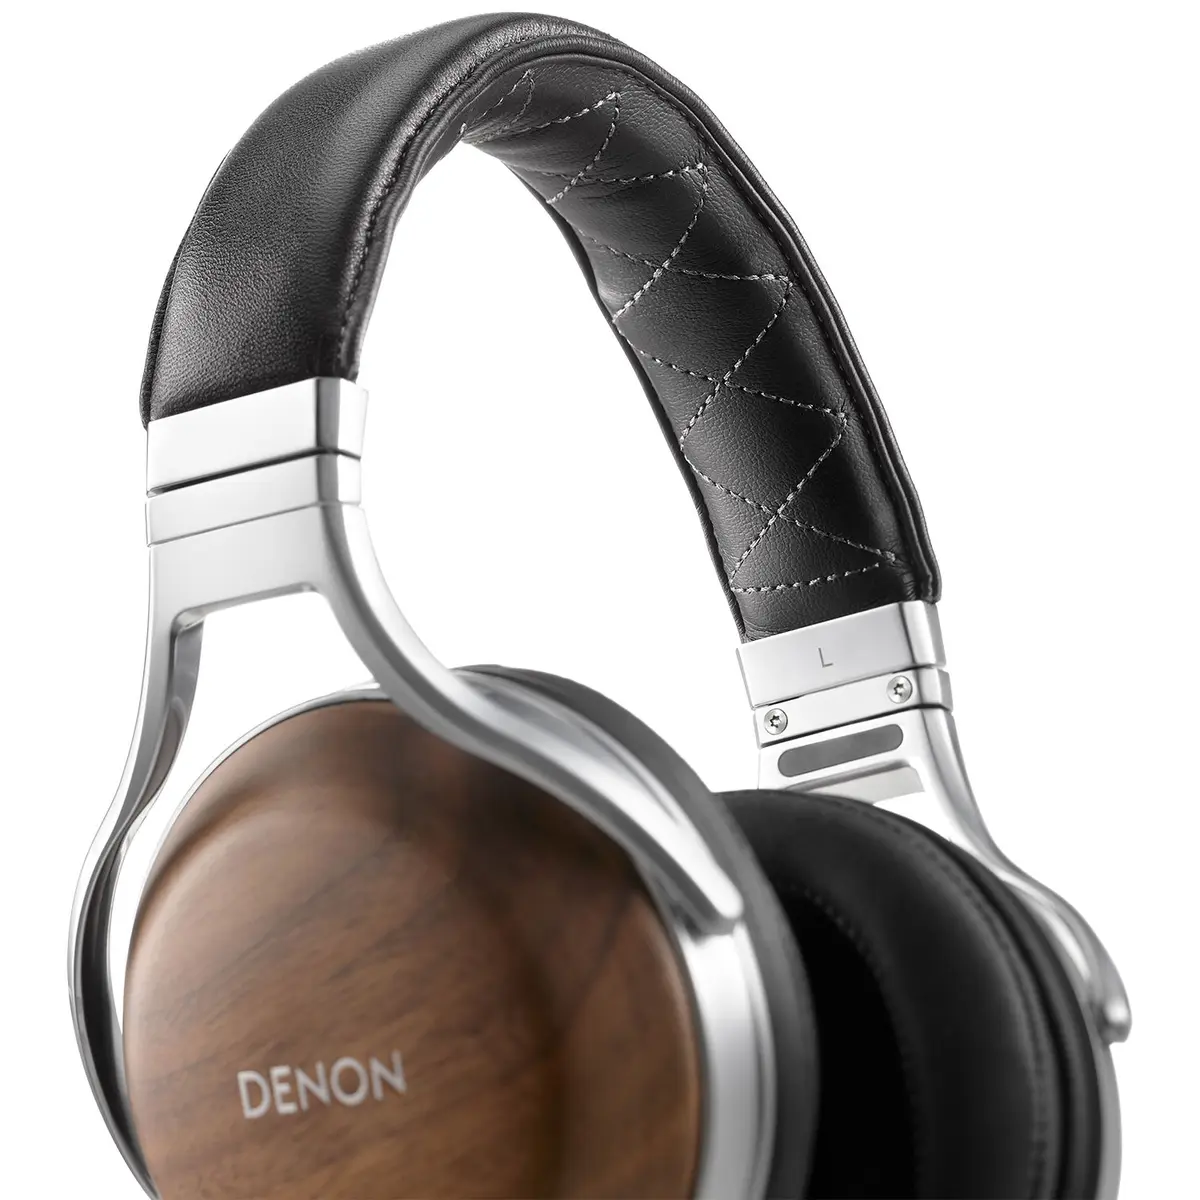 1. Denon AH-D7200 Over-Ear Headphones